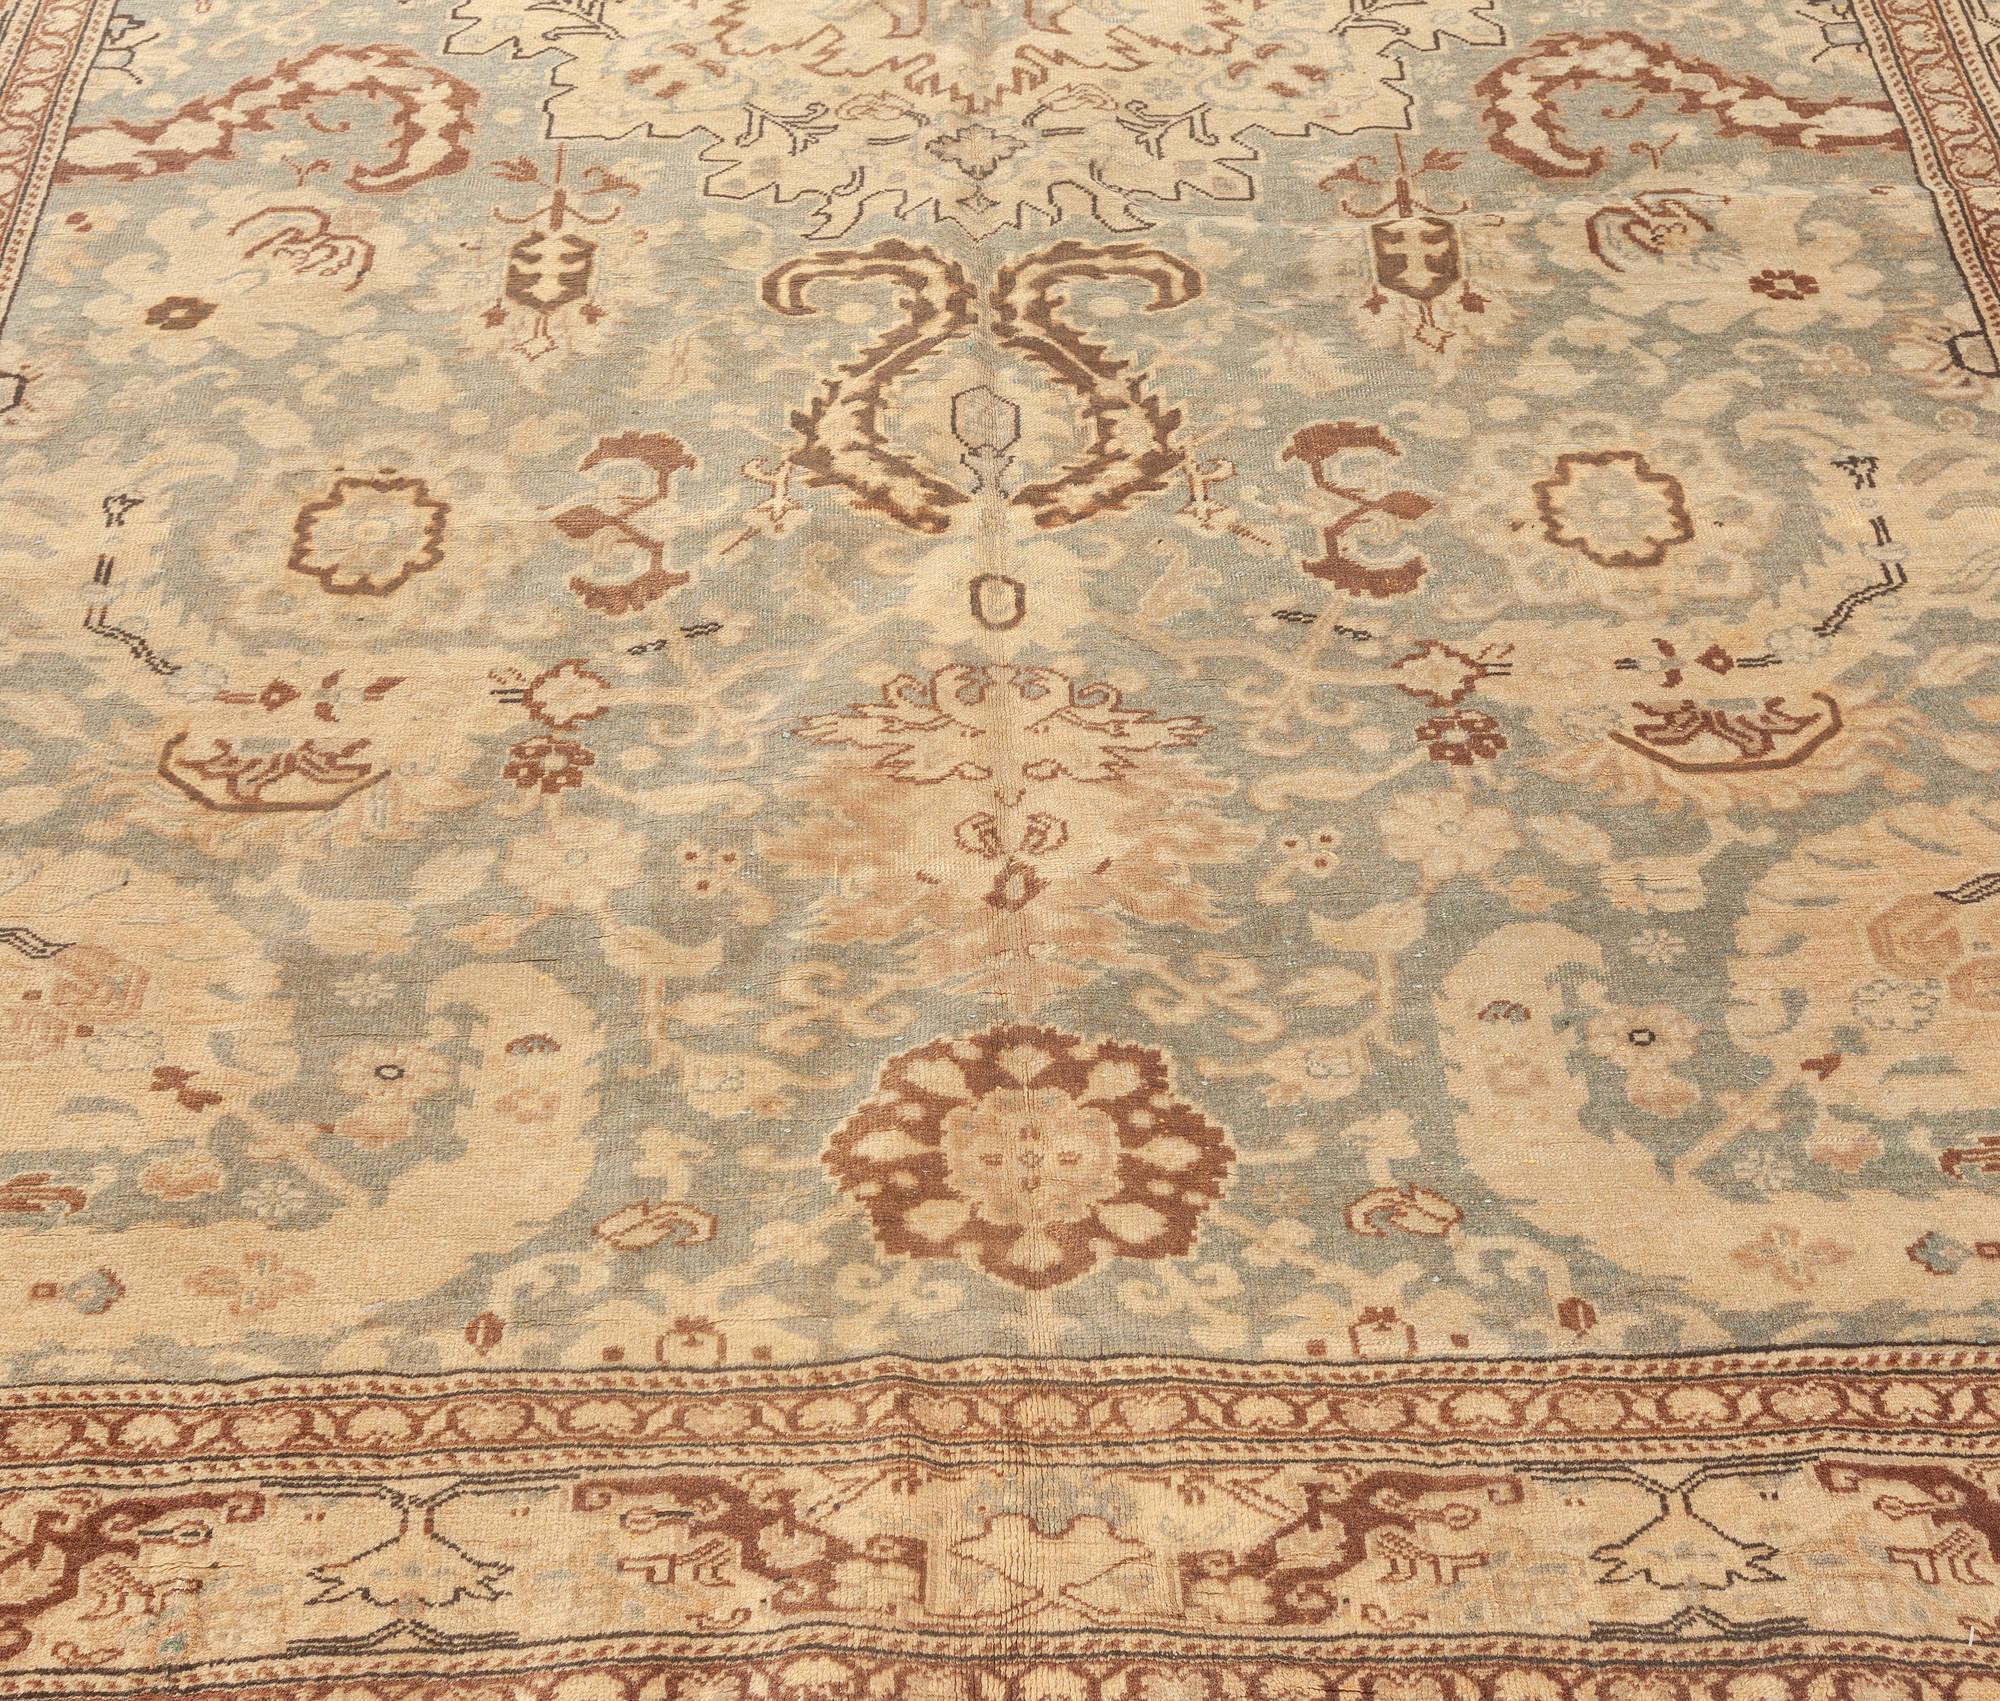 Fine Antique Turkish Sivas green and beige handwoven wool rug
Size: 6'4